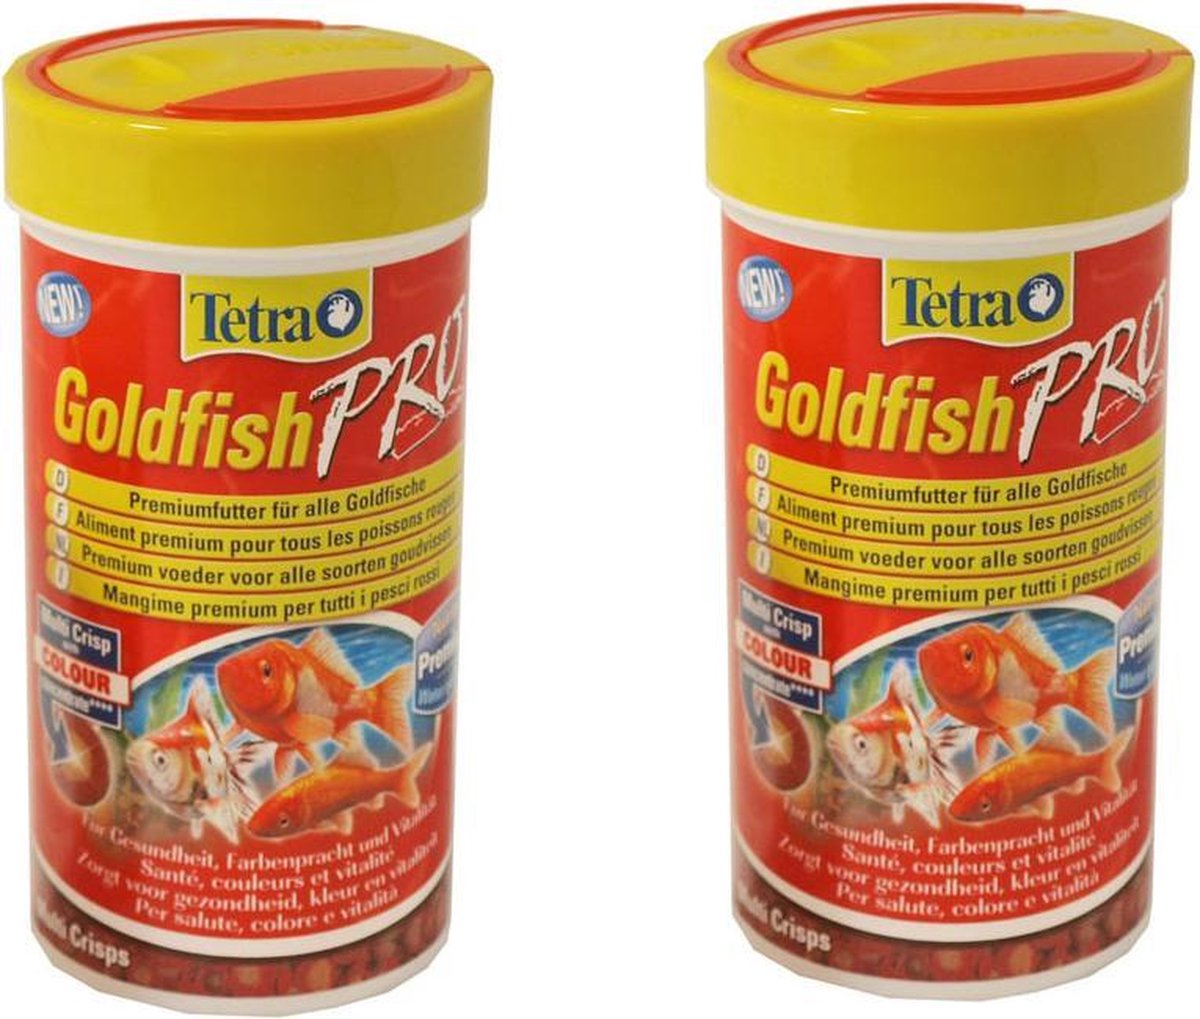 Tetra Goldfish Crisps - Voordeelverpakking 2 stuks - 250 ml